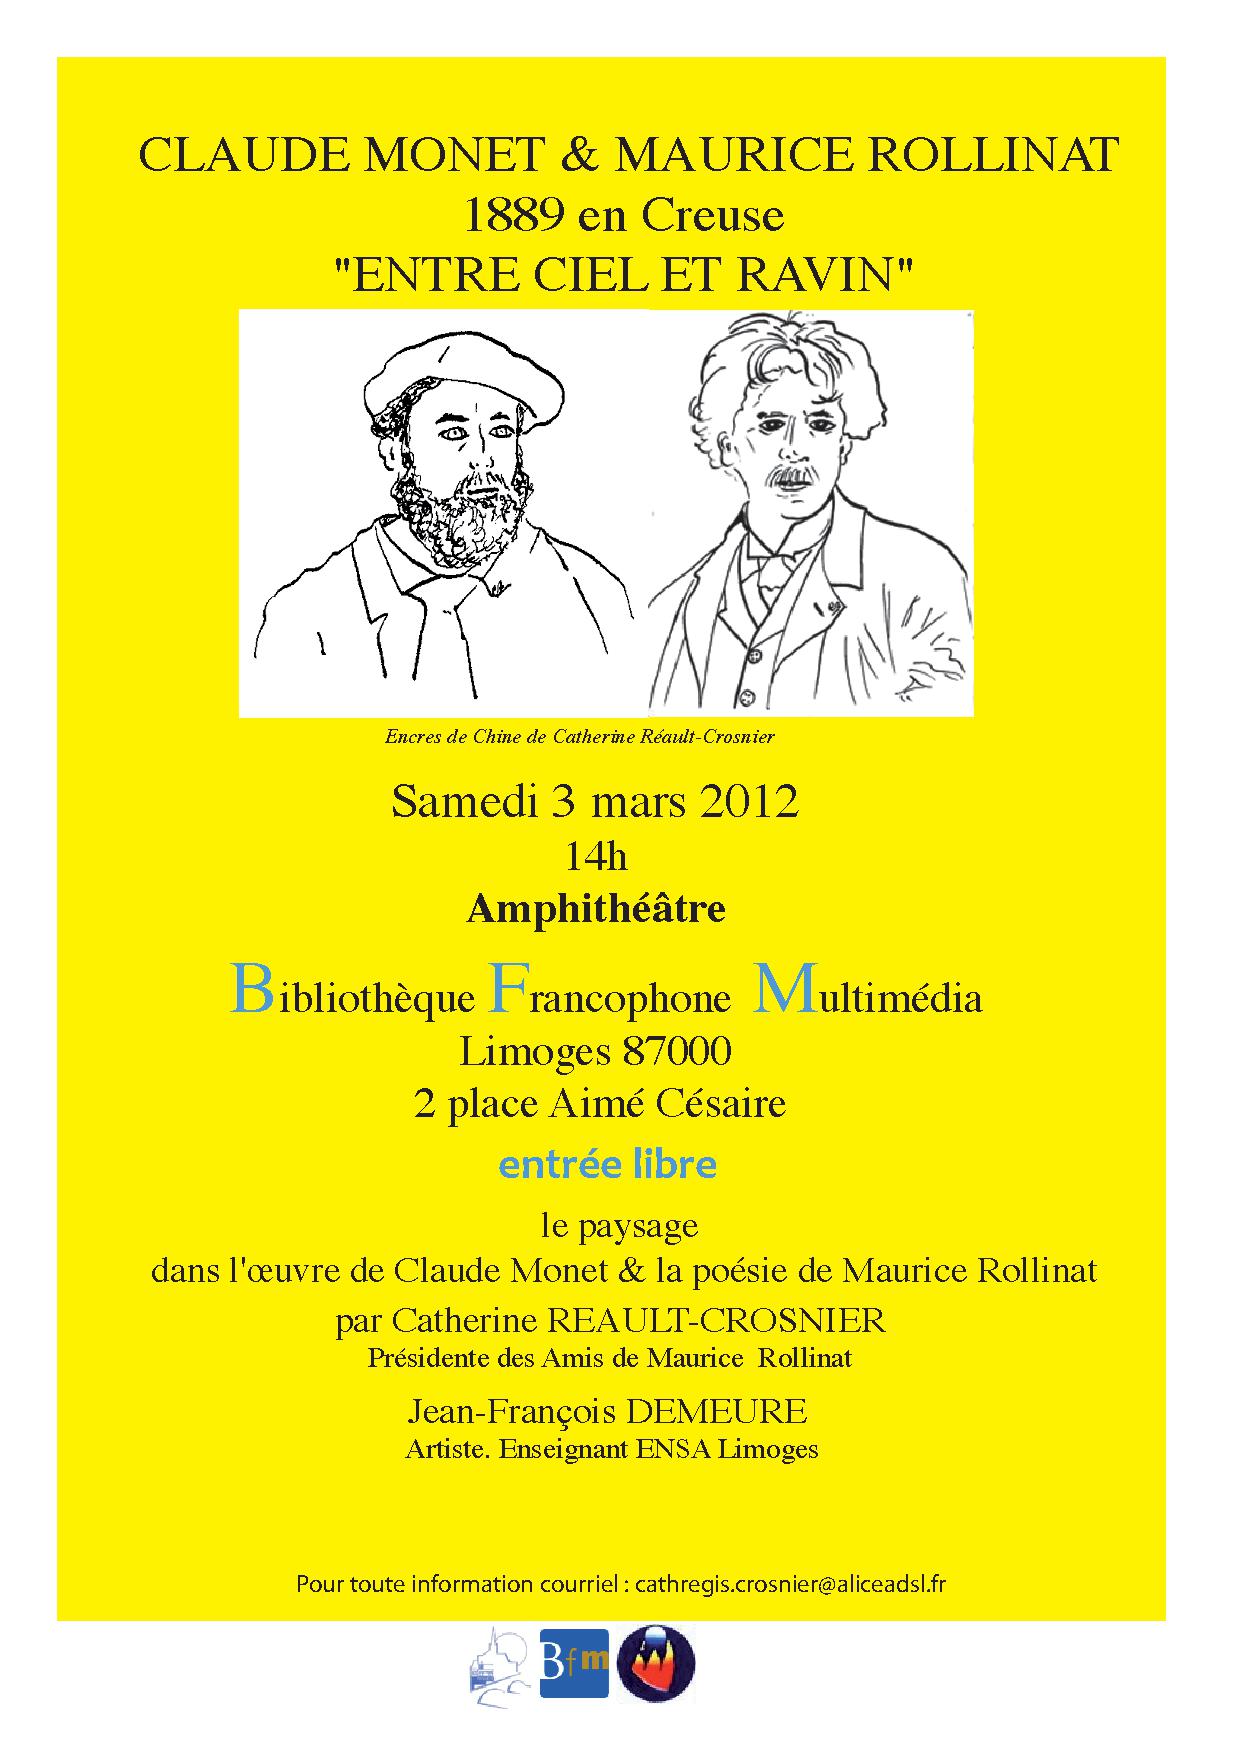 Affiche de l’après-midi littéraire organisé par l’Association des Amis de Maurice Rollinat, le 3 mars 2012, à la Bibliothèque Francophone Multimédia de Limoges.